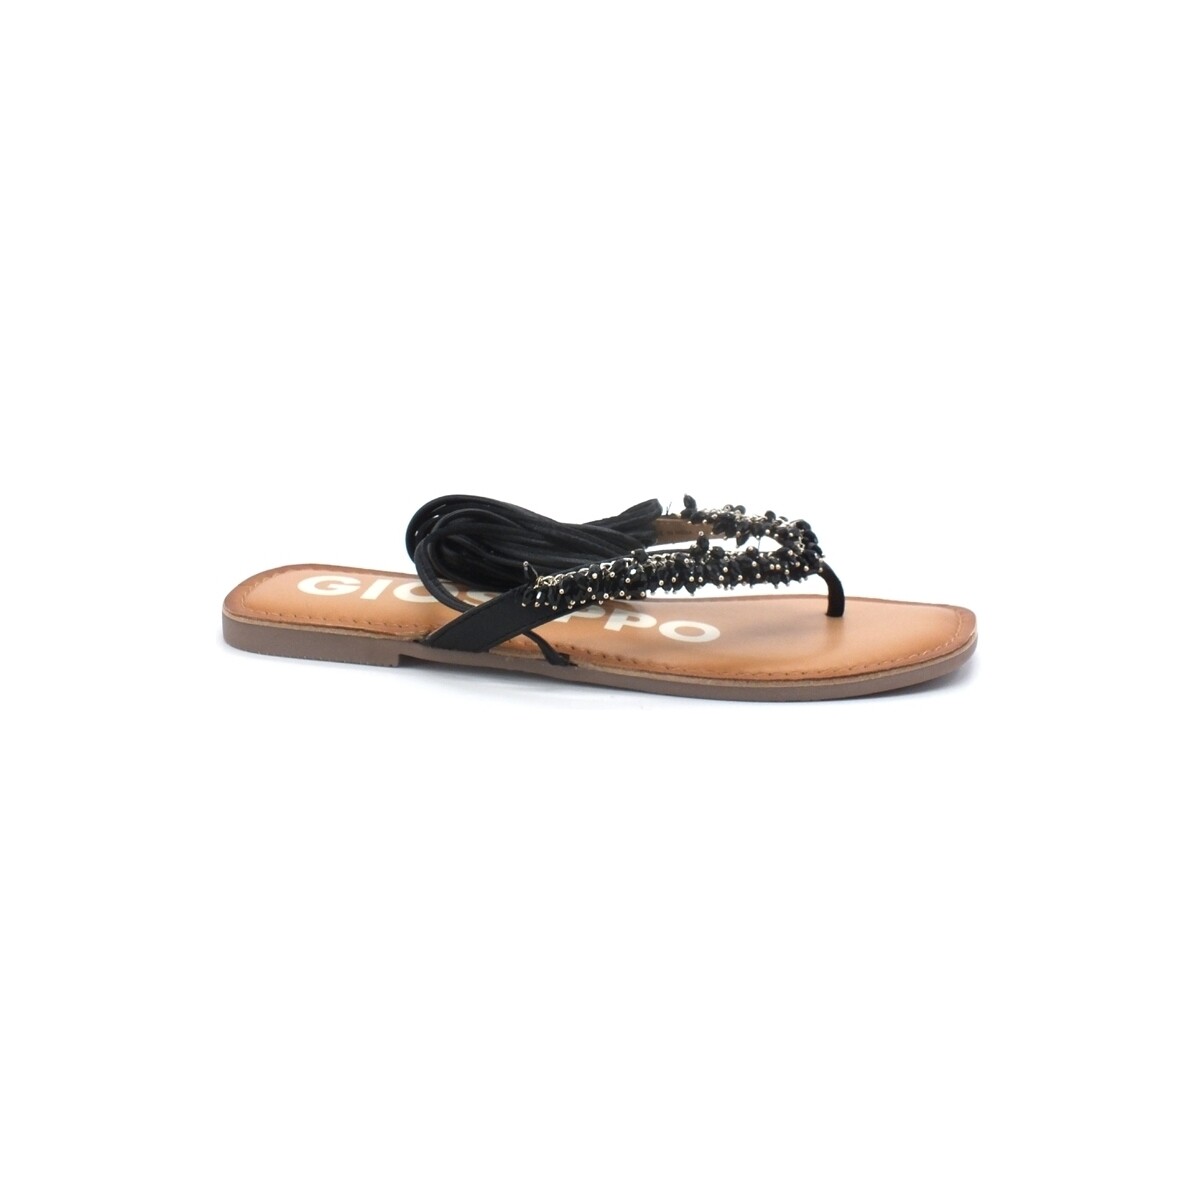 Chaussures Femme Bottes Gioseppo Eileen Sandalo Infradito Gladiator Black 63031 Noir